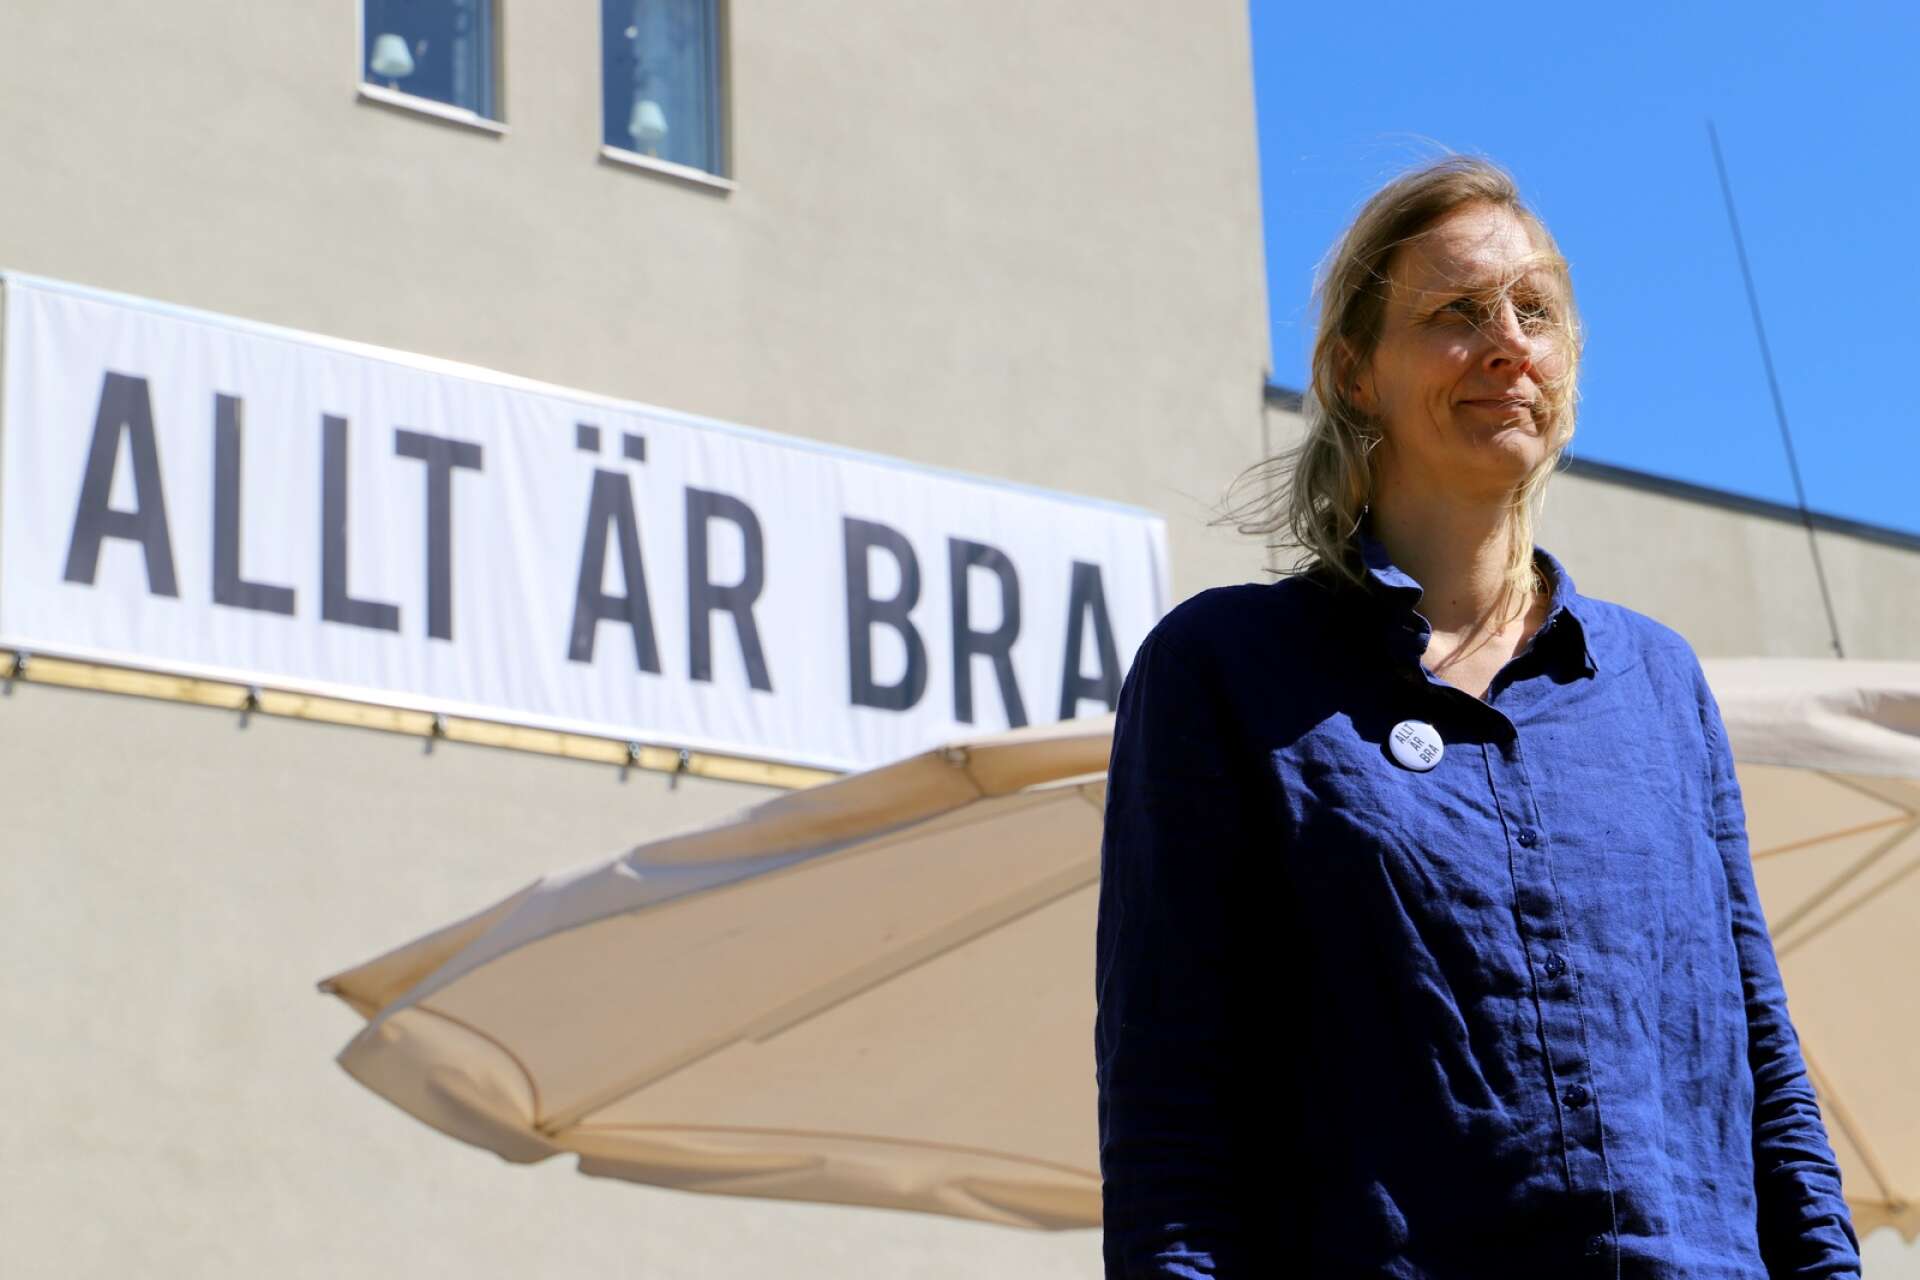 &quot;Allt är bra”. Eller? Ulrika Sparre väcker frågor med sitt budskap i centrala Kristinehamn.